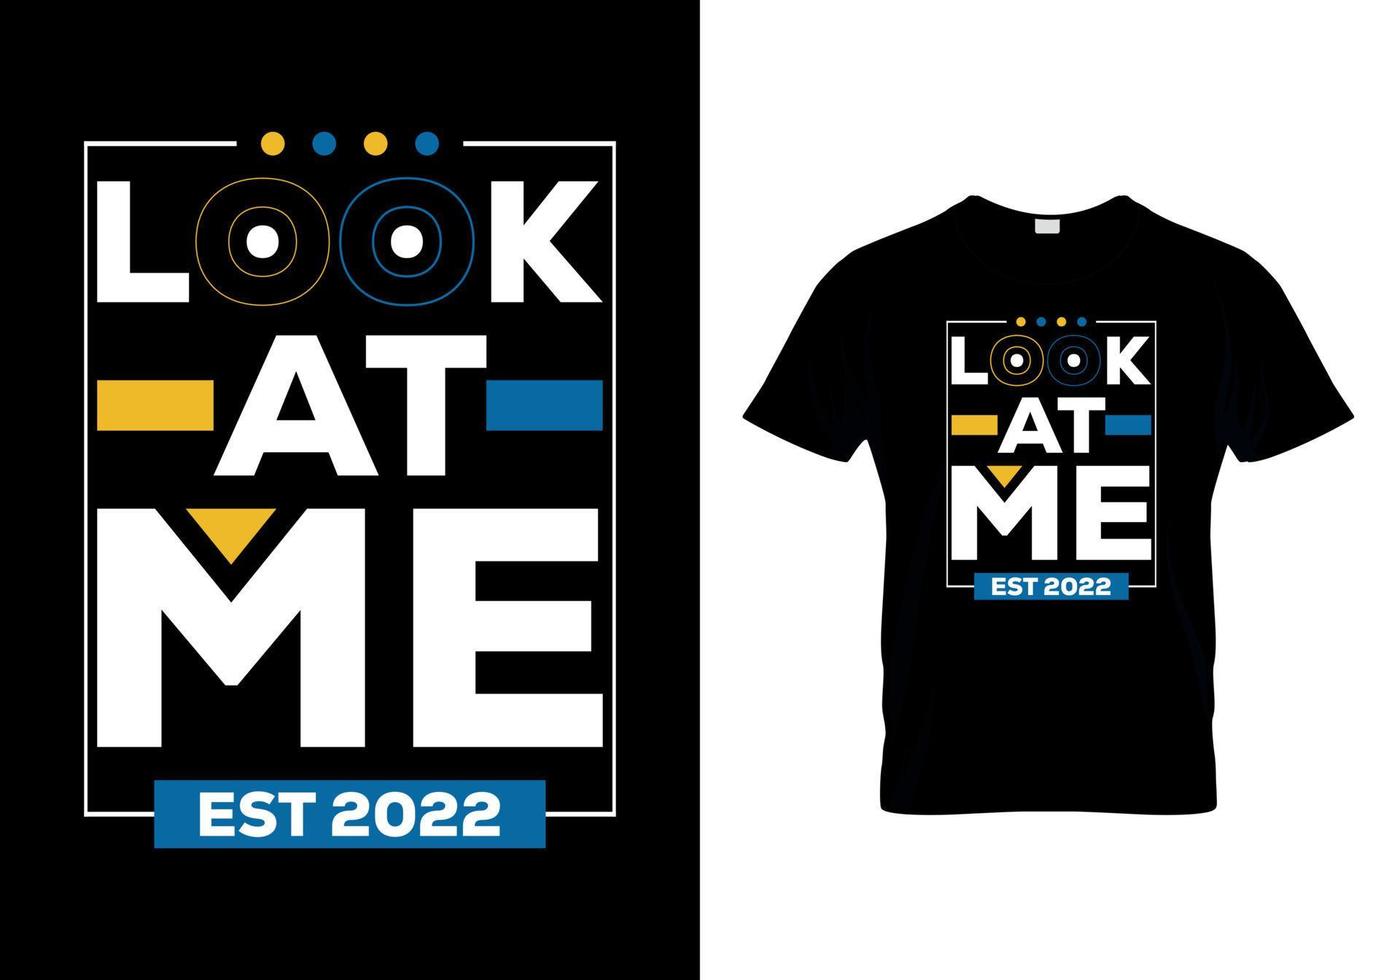 Look at me est 2022 t-shirts design vector